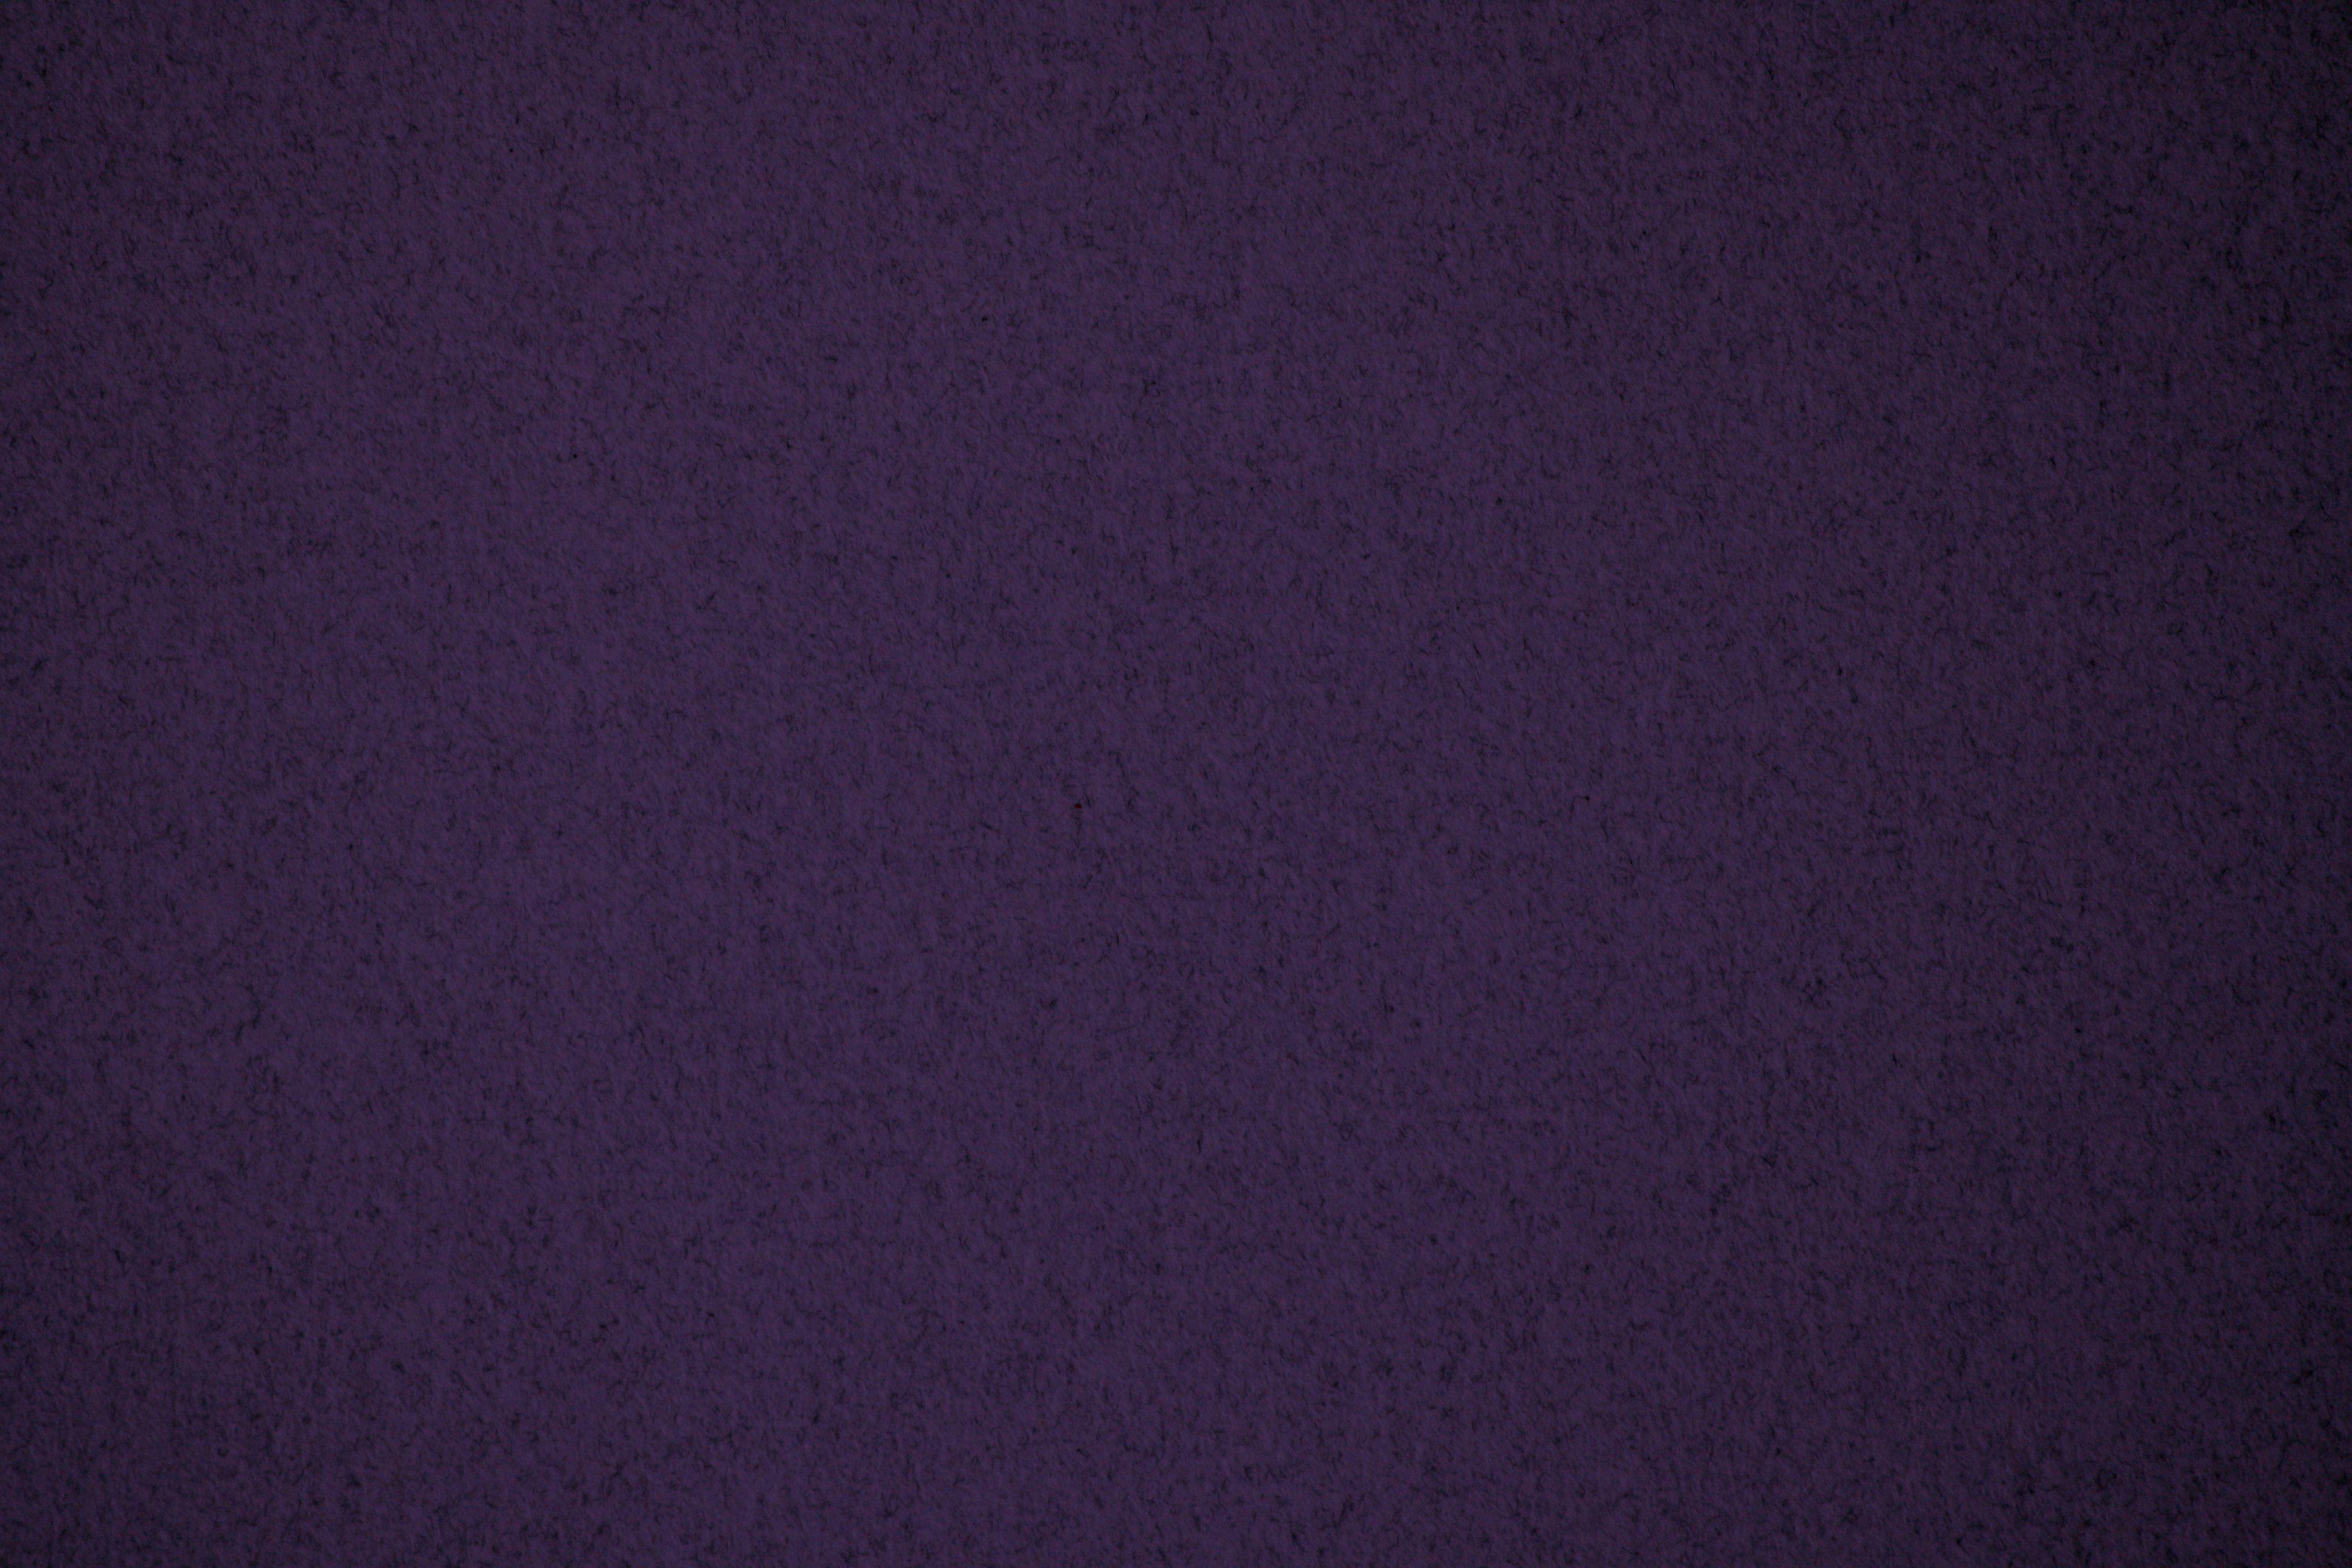 Dark Purple Backgrounds - Wallpaper Cave